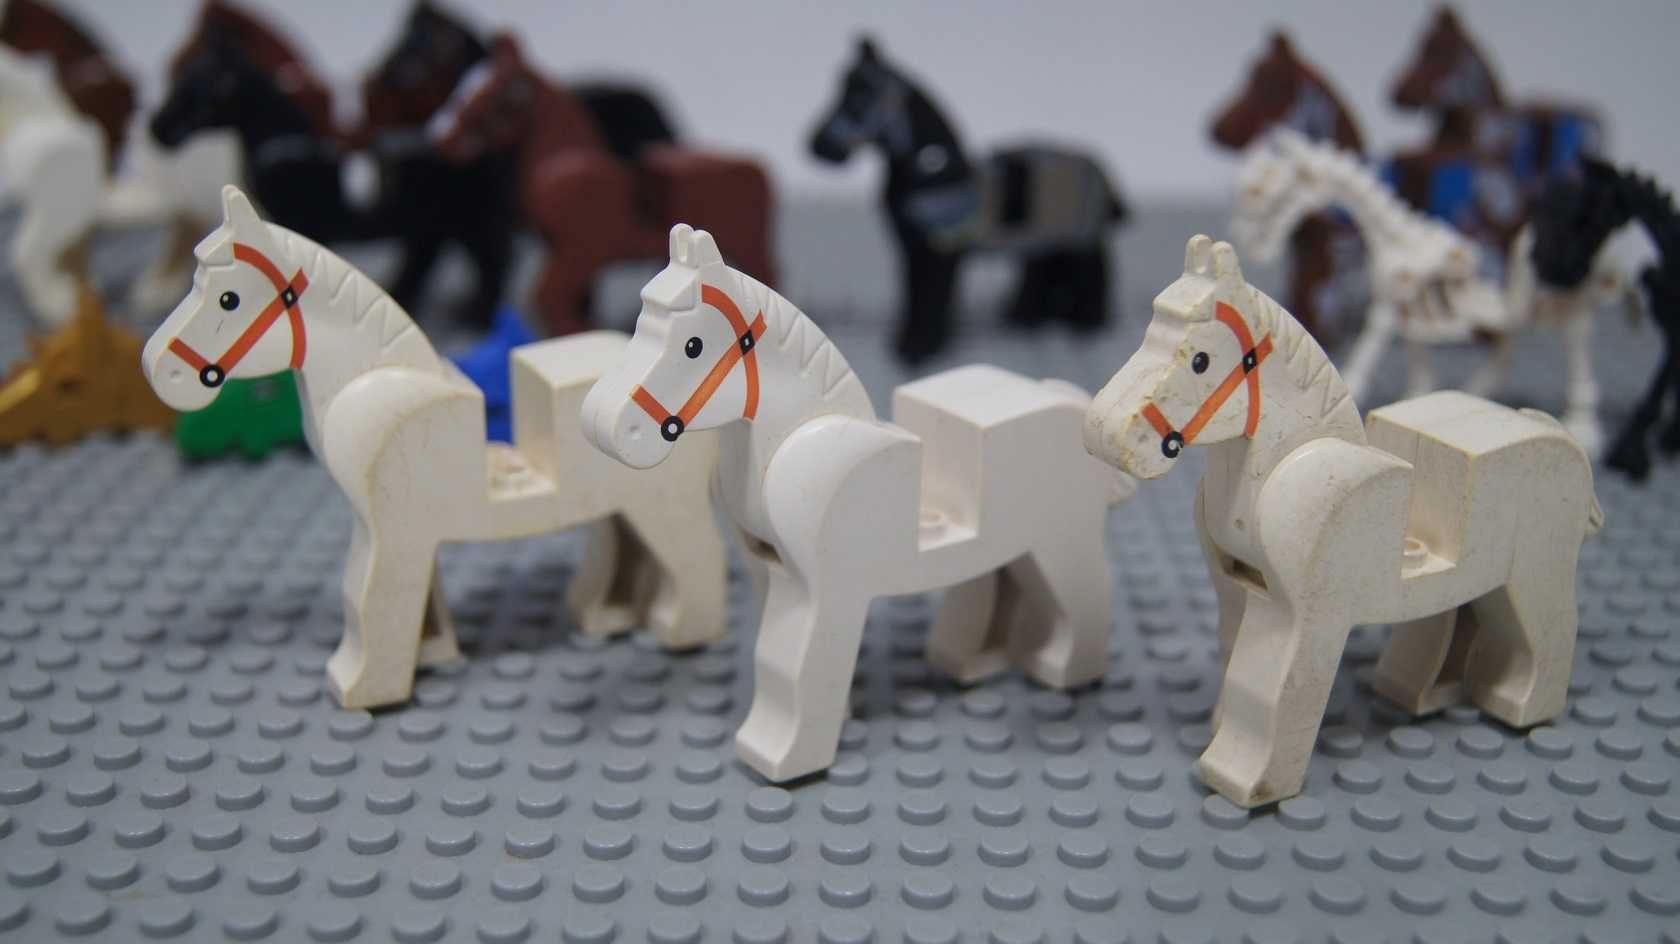 Lego Castle konie 14 sztuk + gratis maski koń czarny biały brązowy